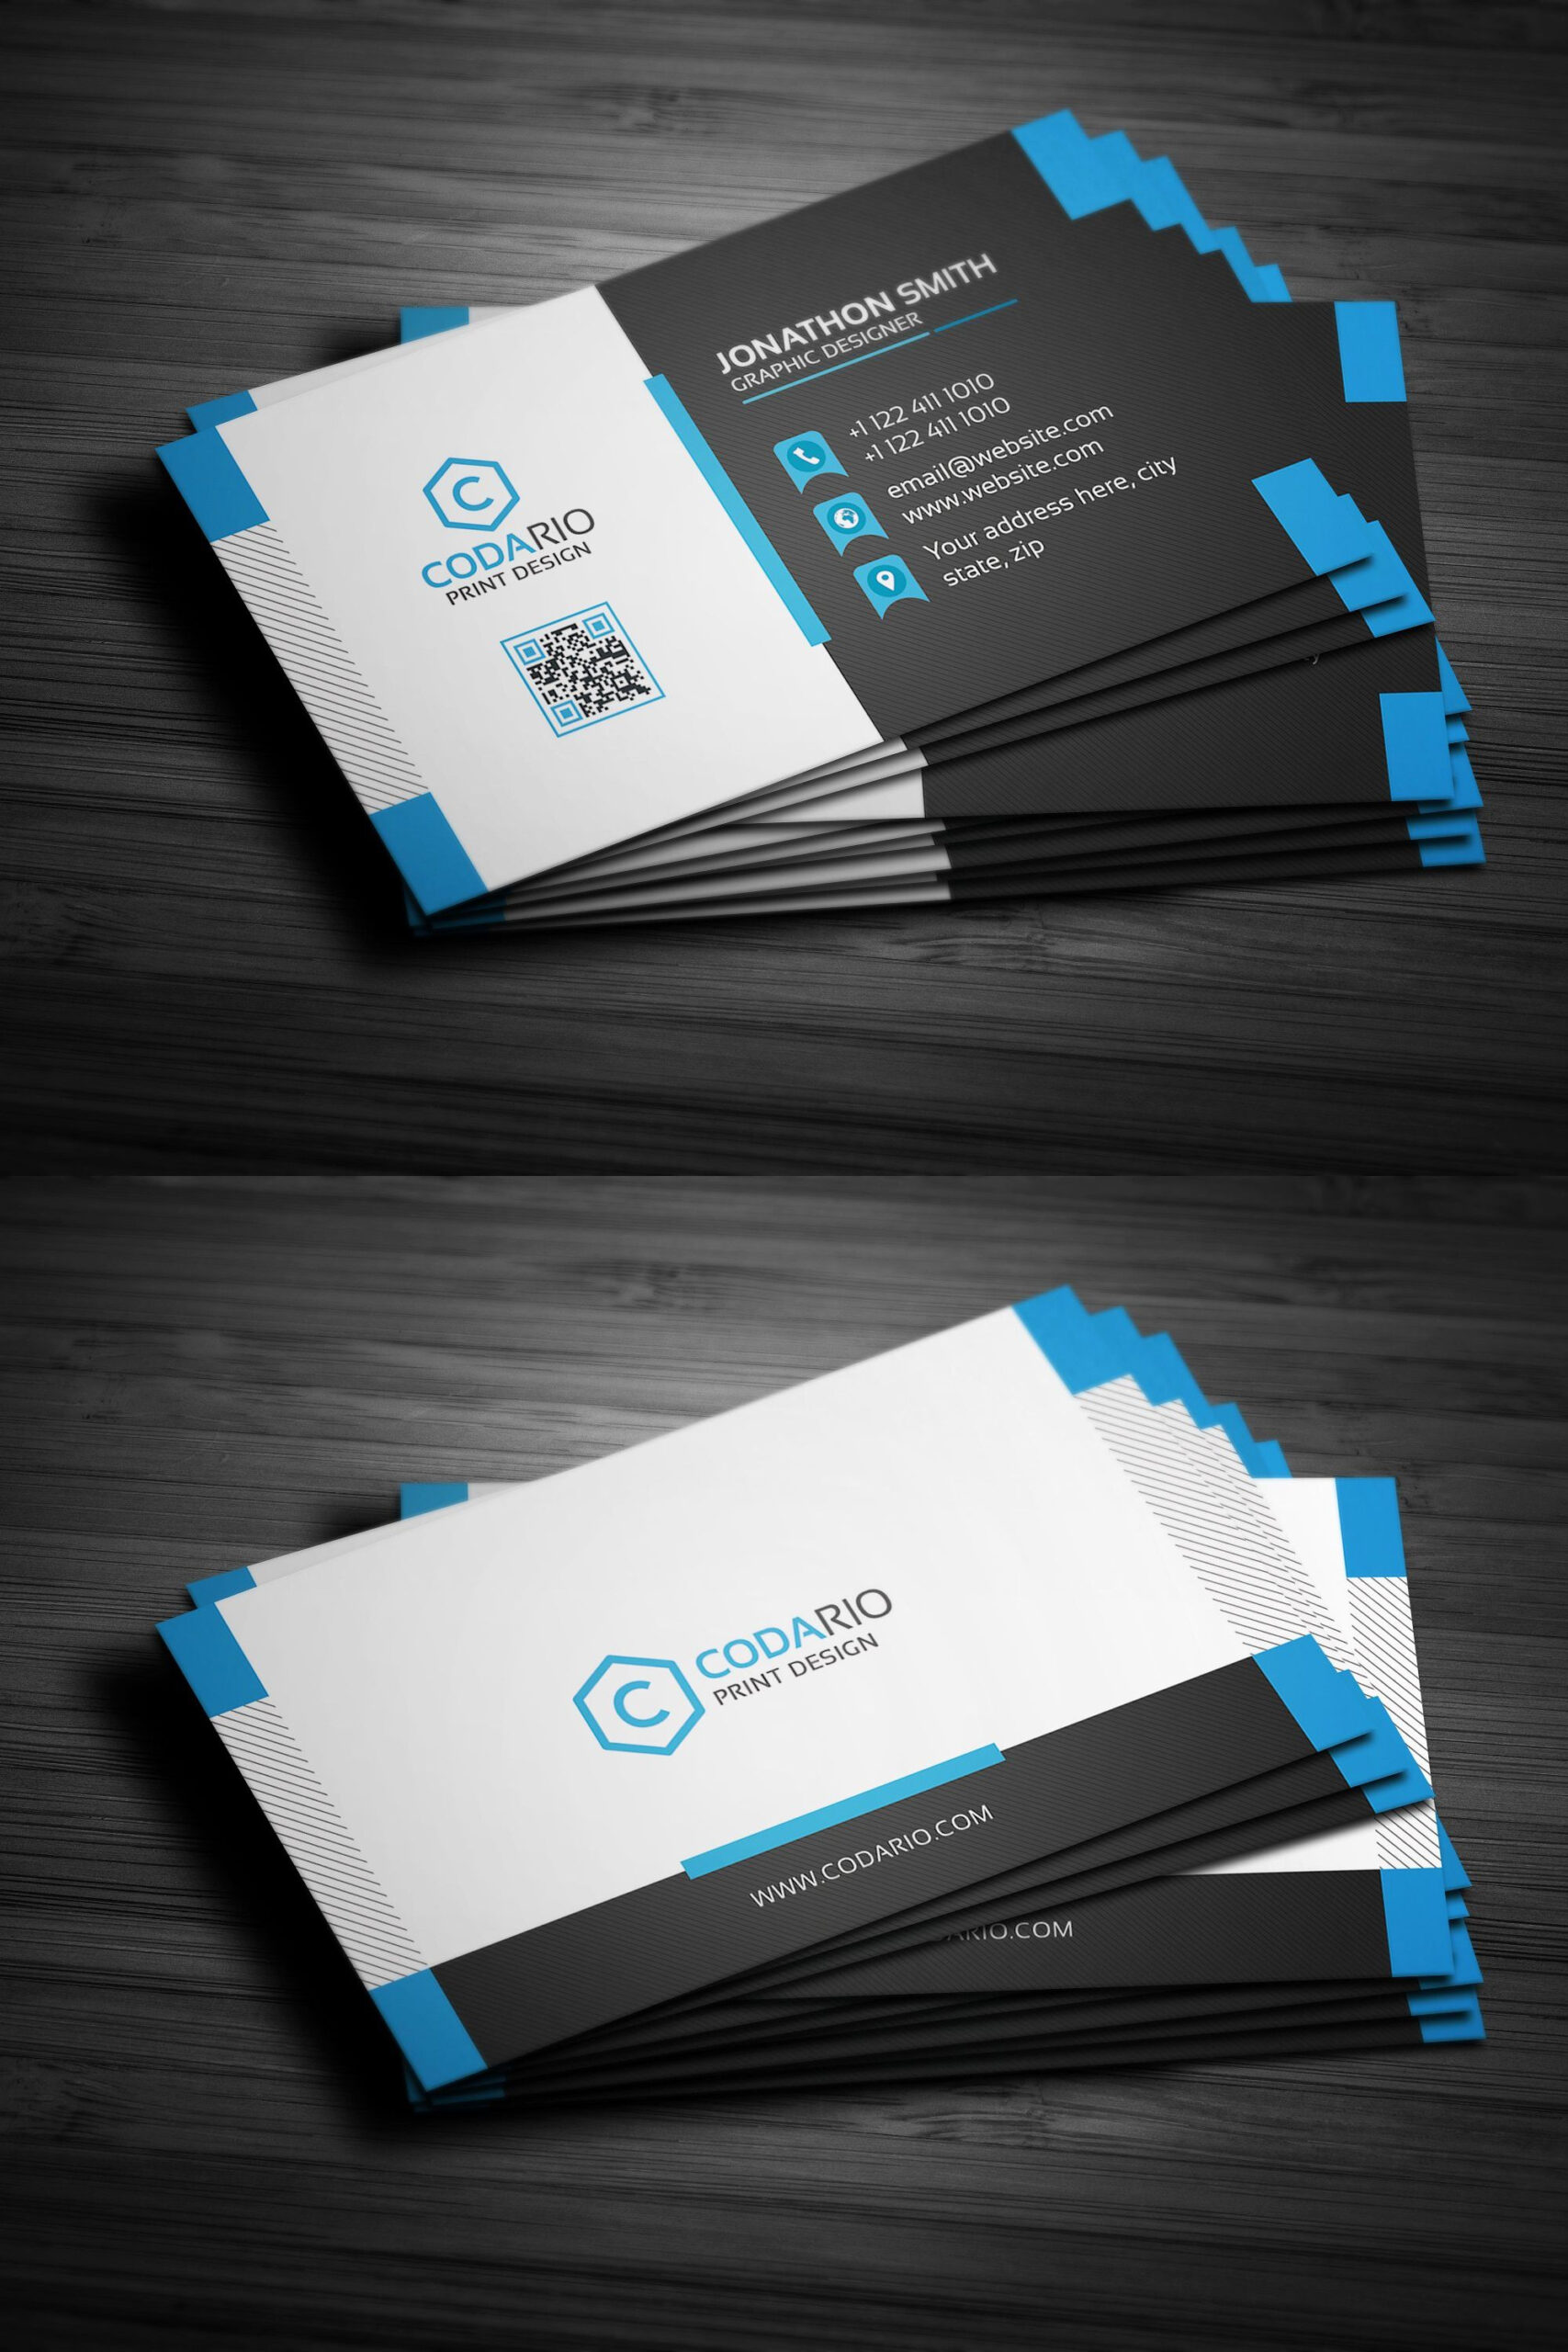 Modern Creative Business Card Template Psd | Create Business With Creative Business Card Templates Psd